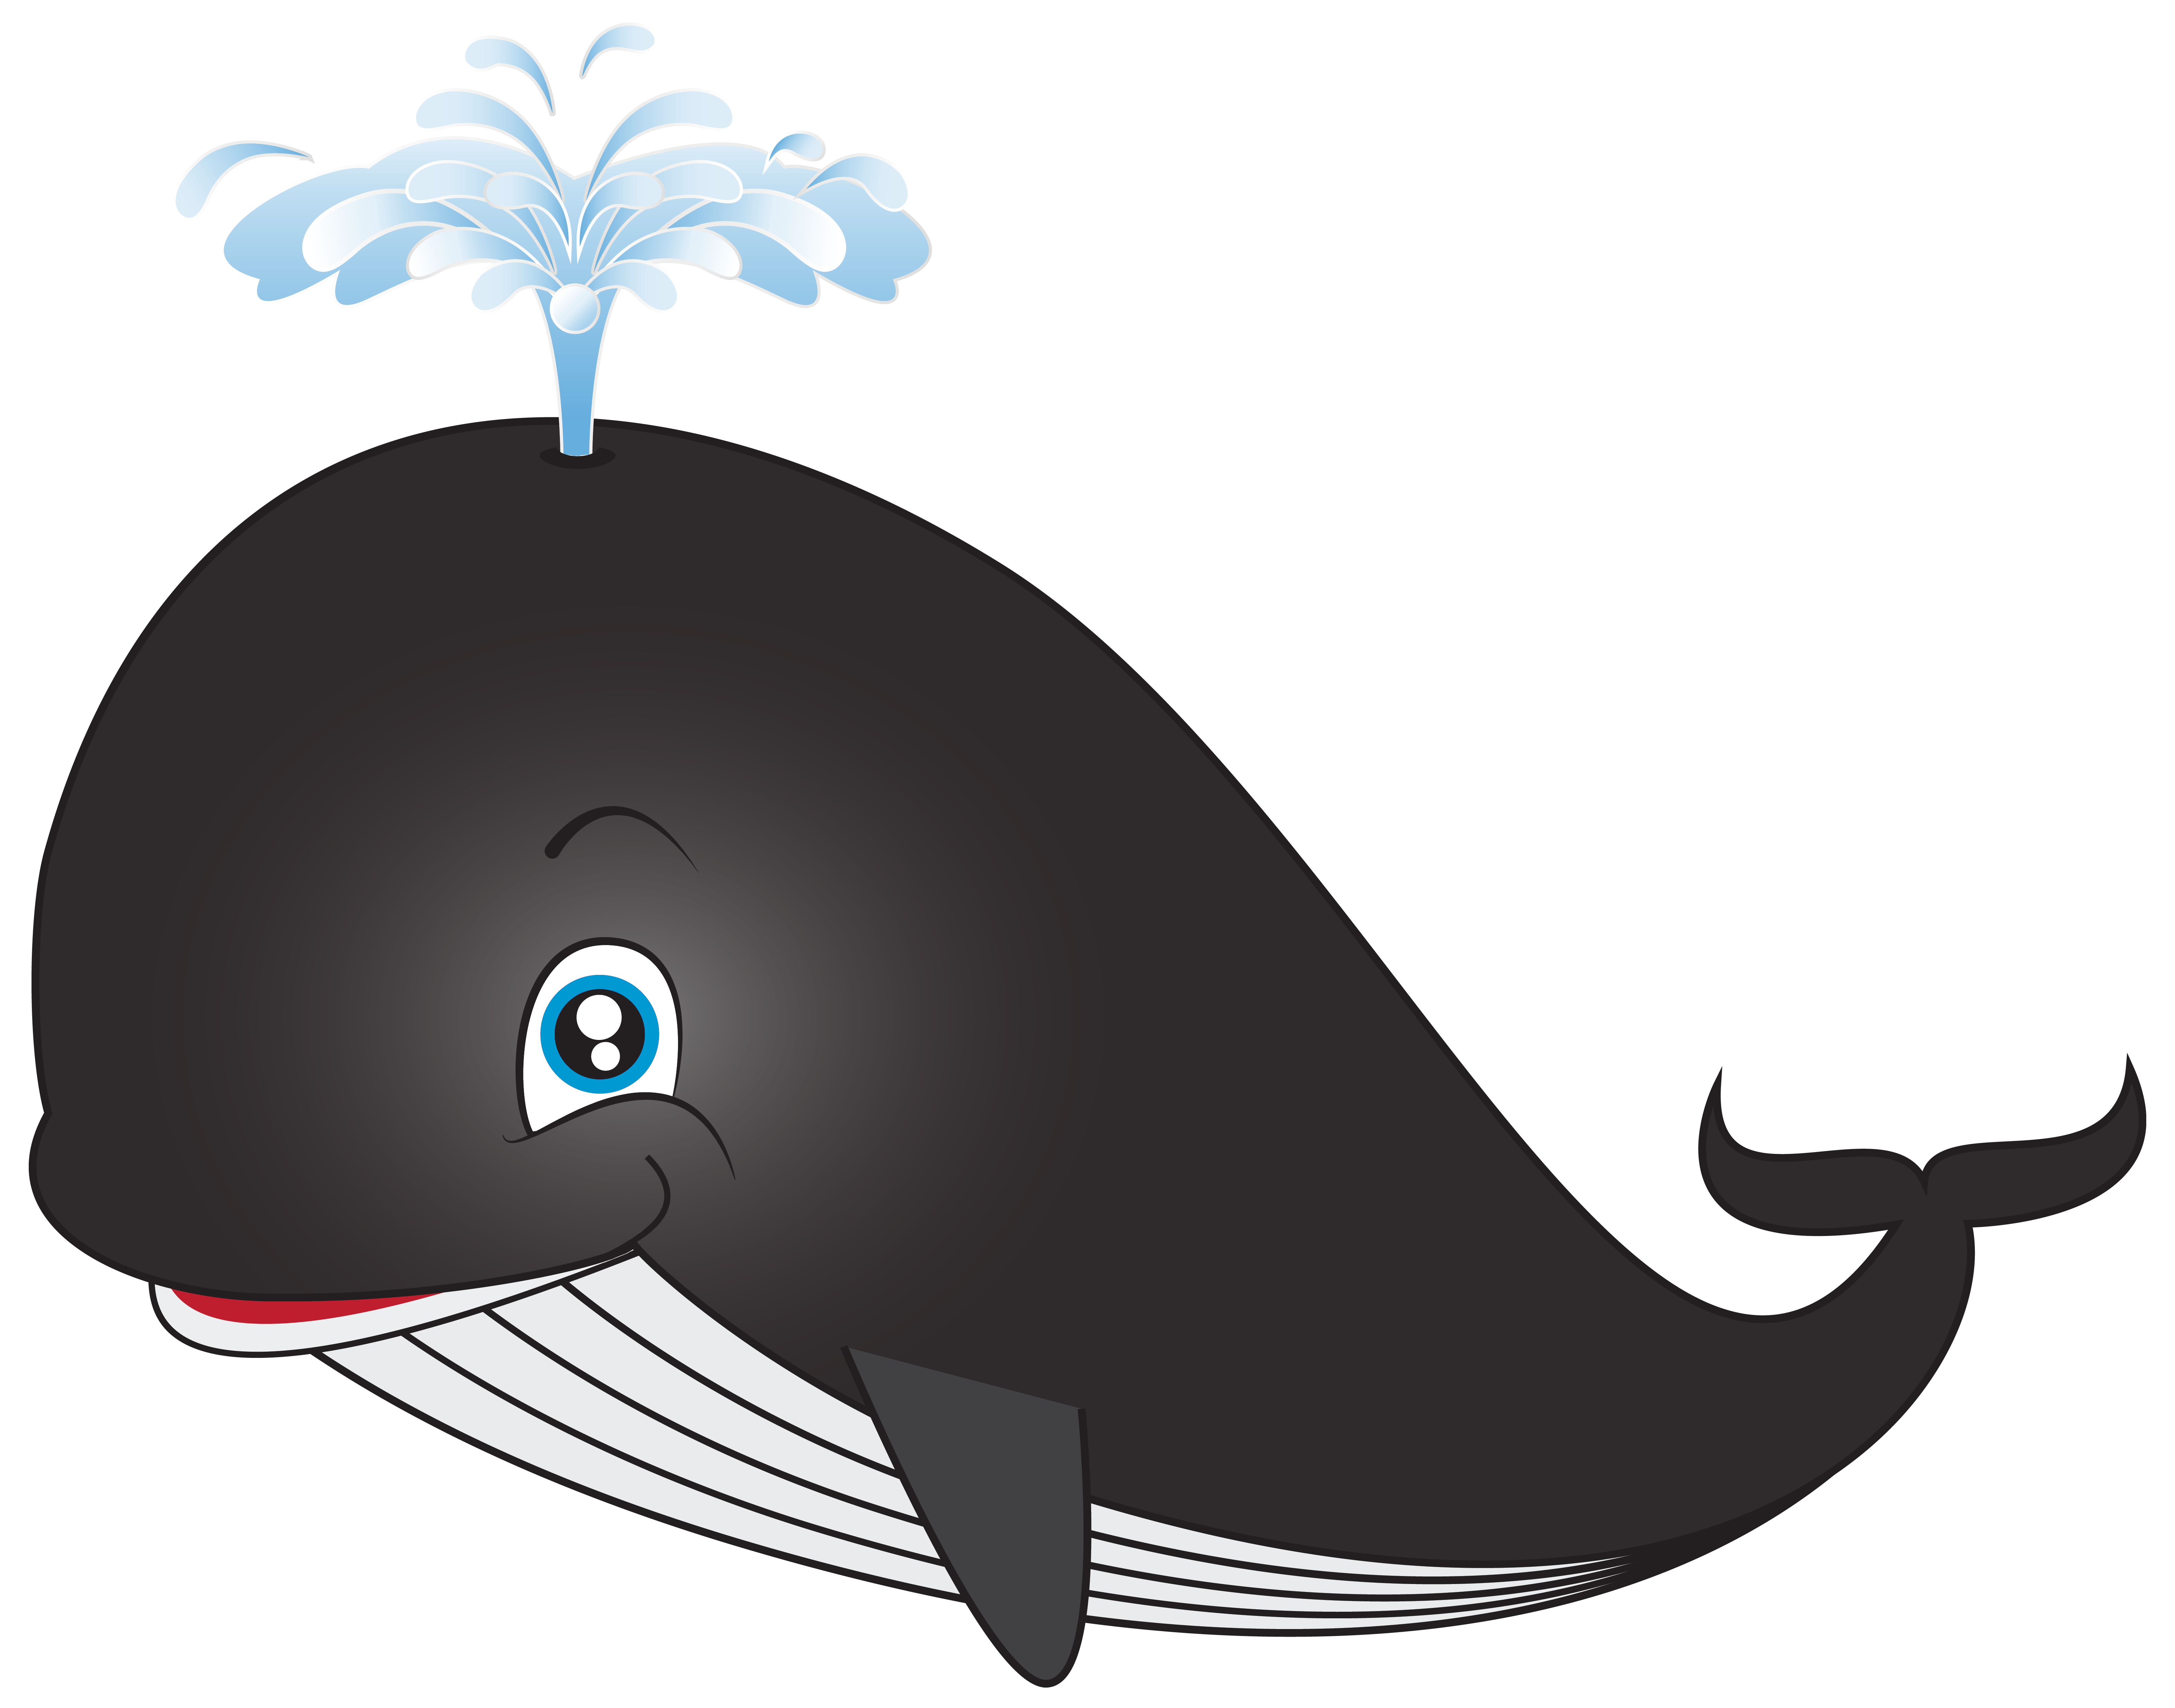 Whale cartoon clip art image - Clipartix